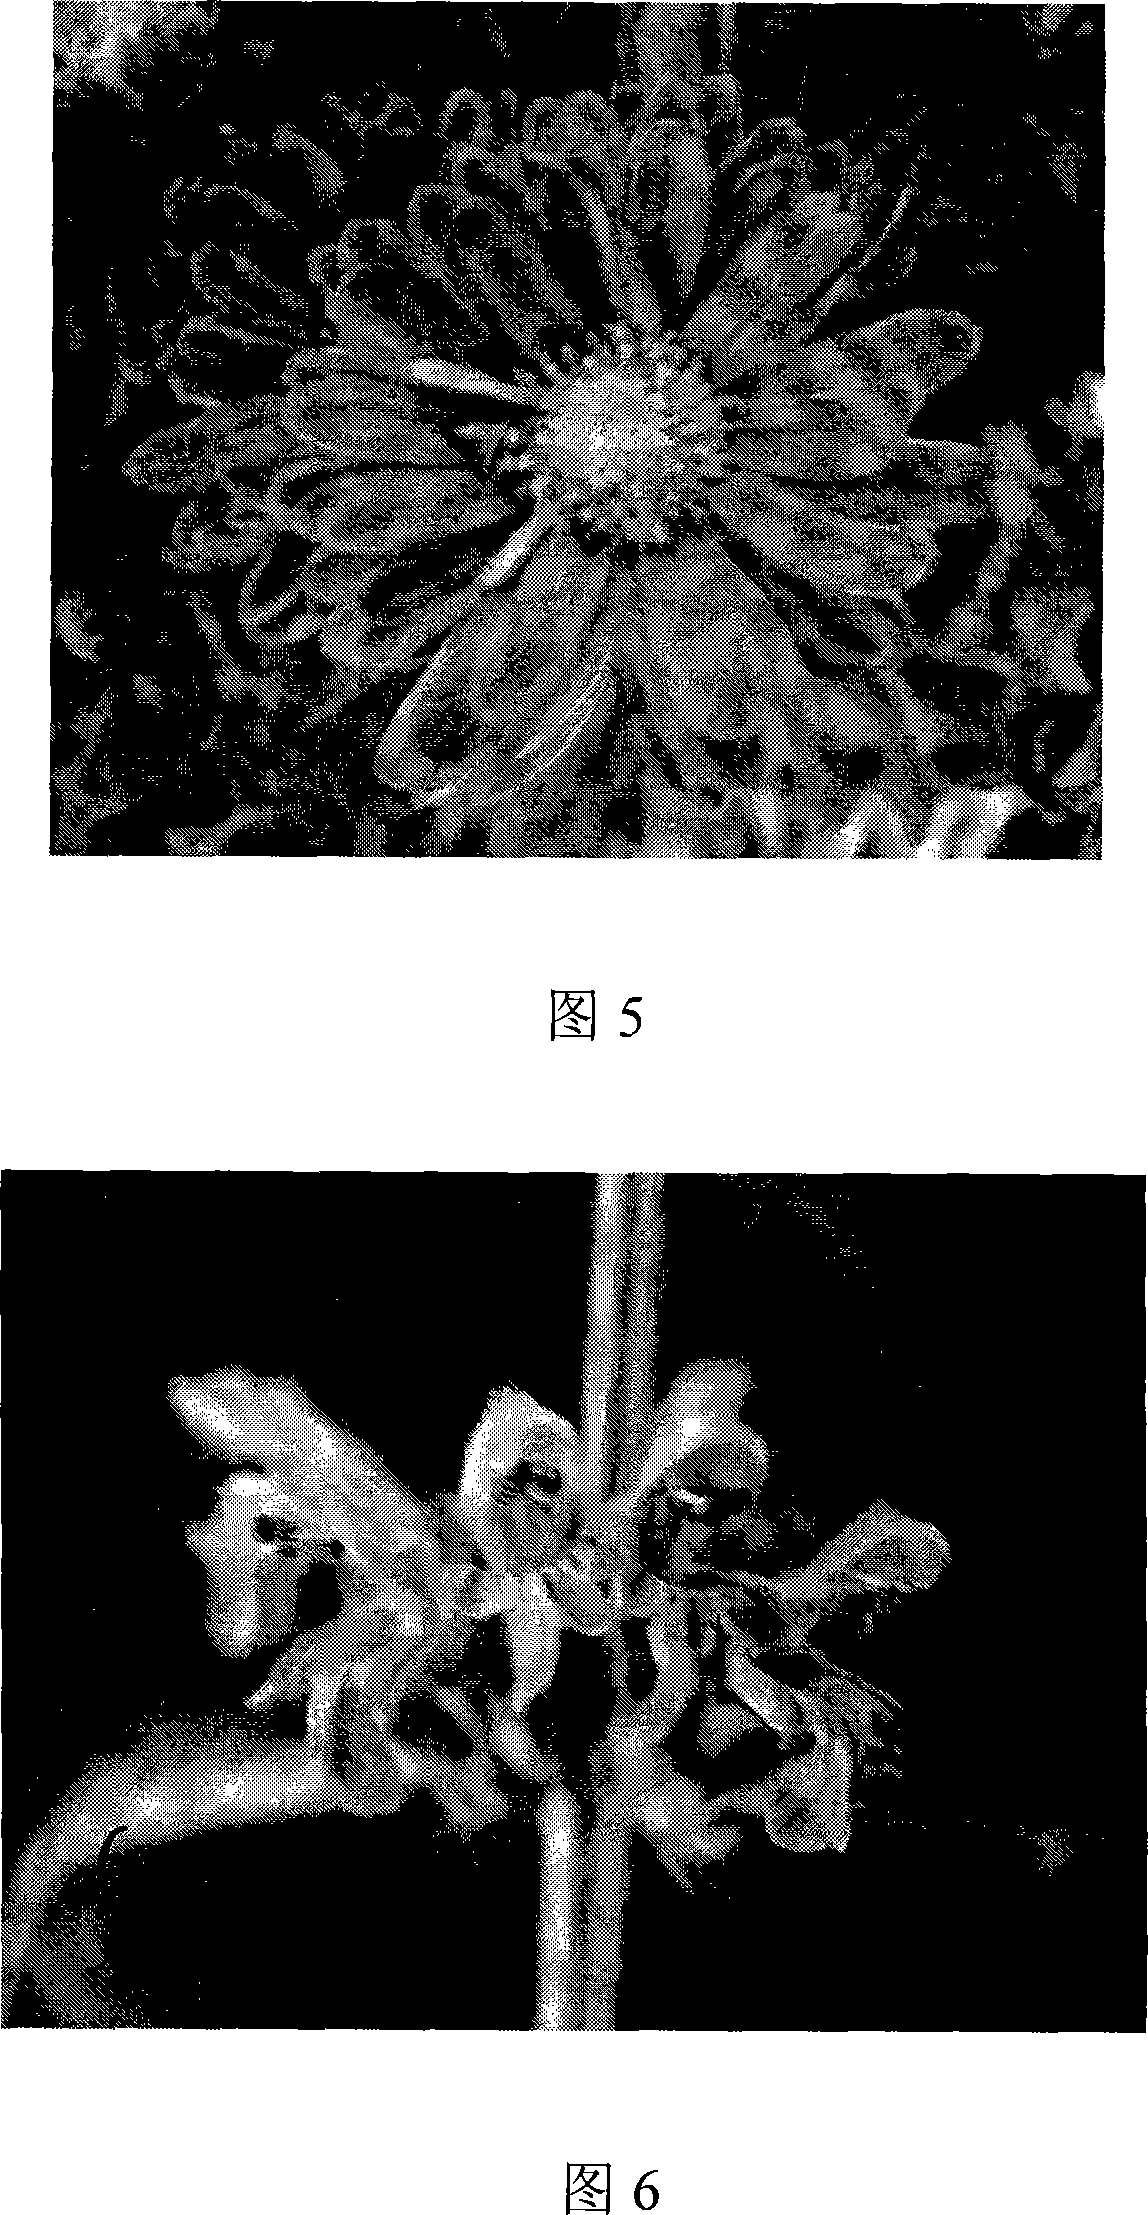 Method for breeding new flower-shaped chrysanthemum